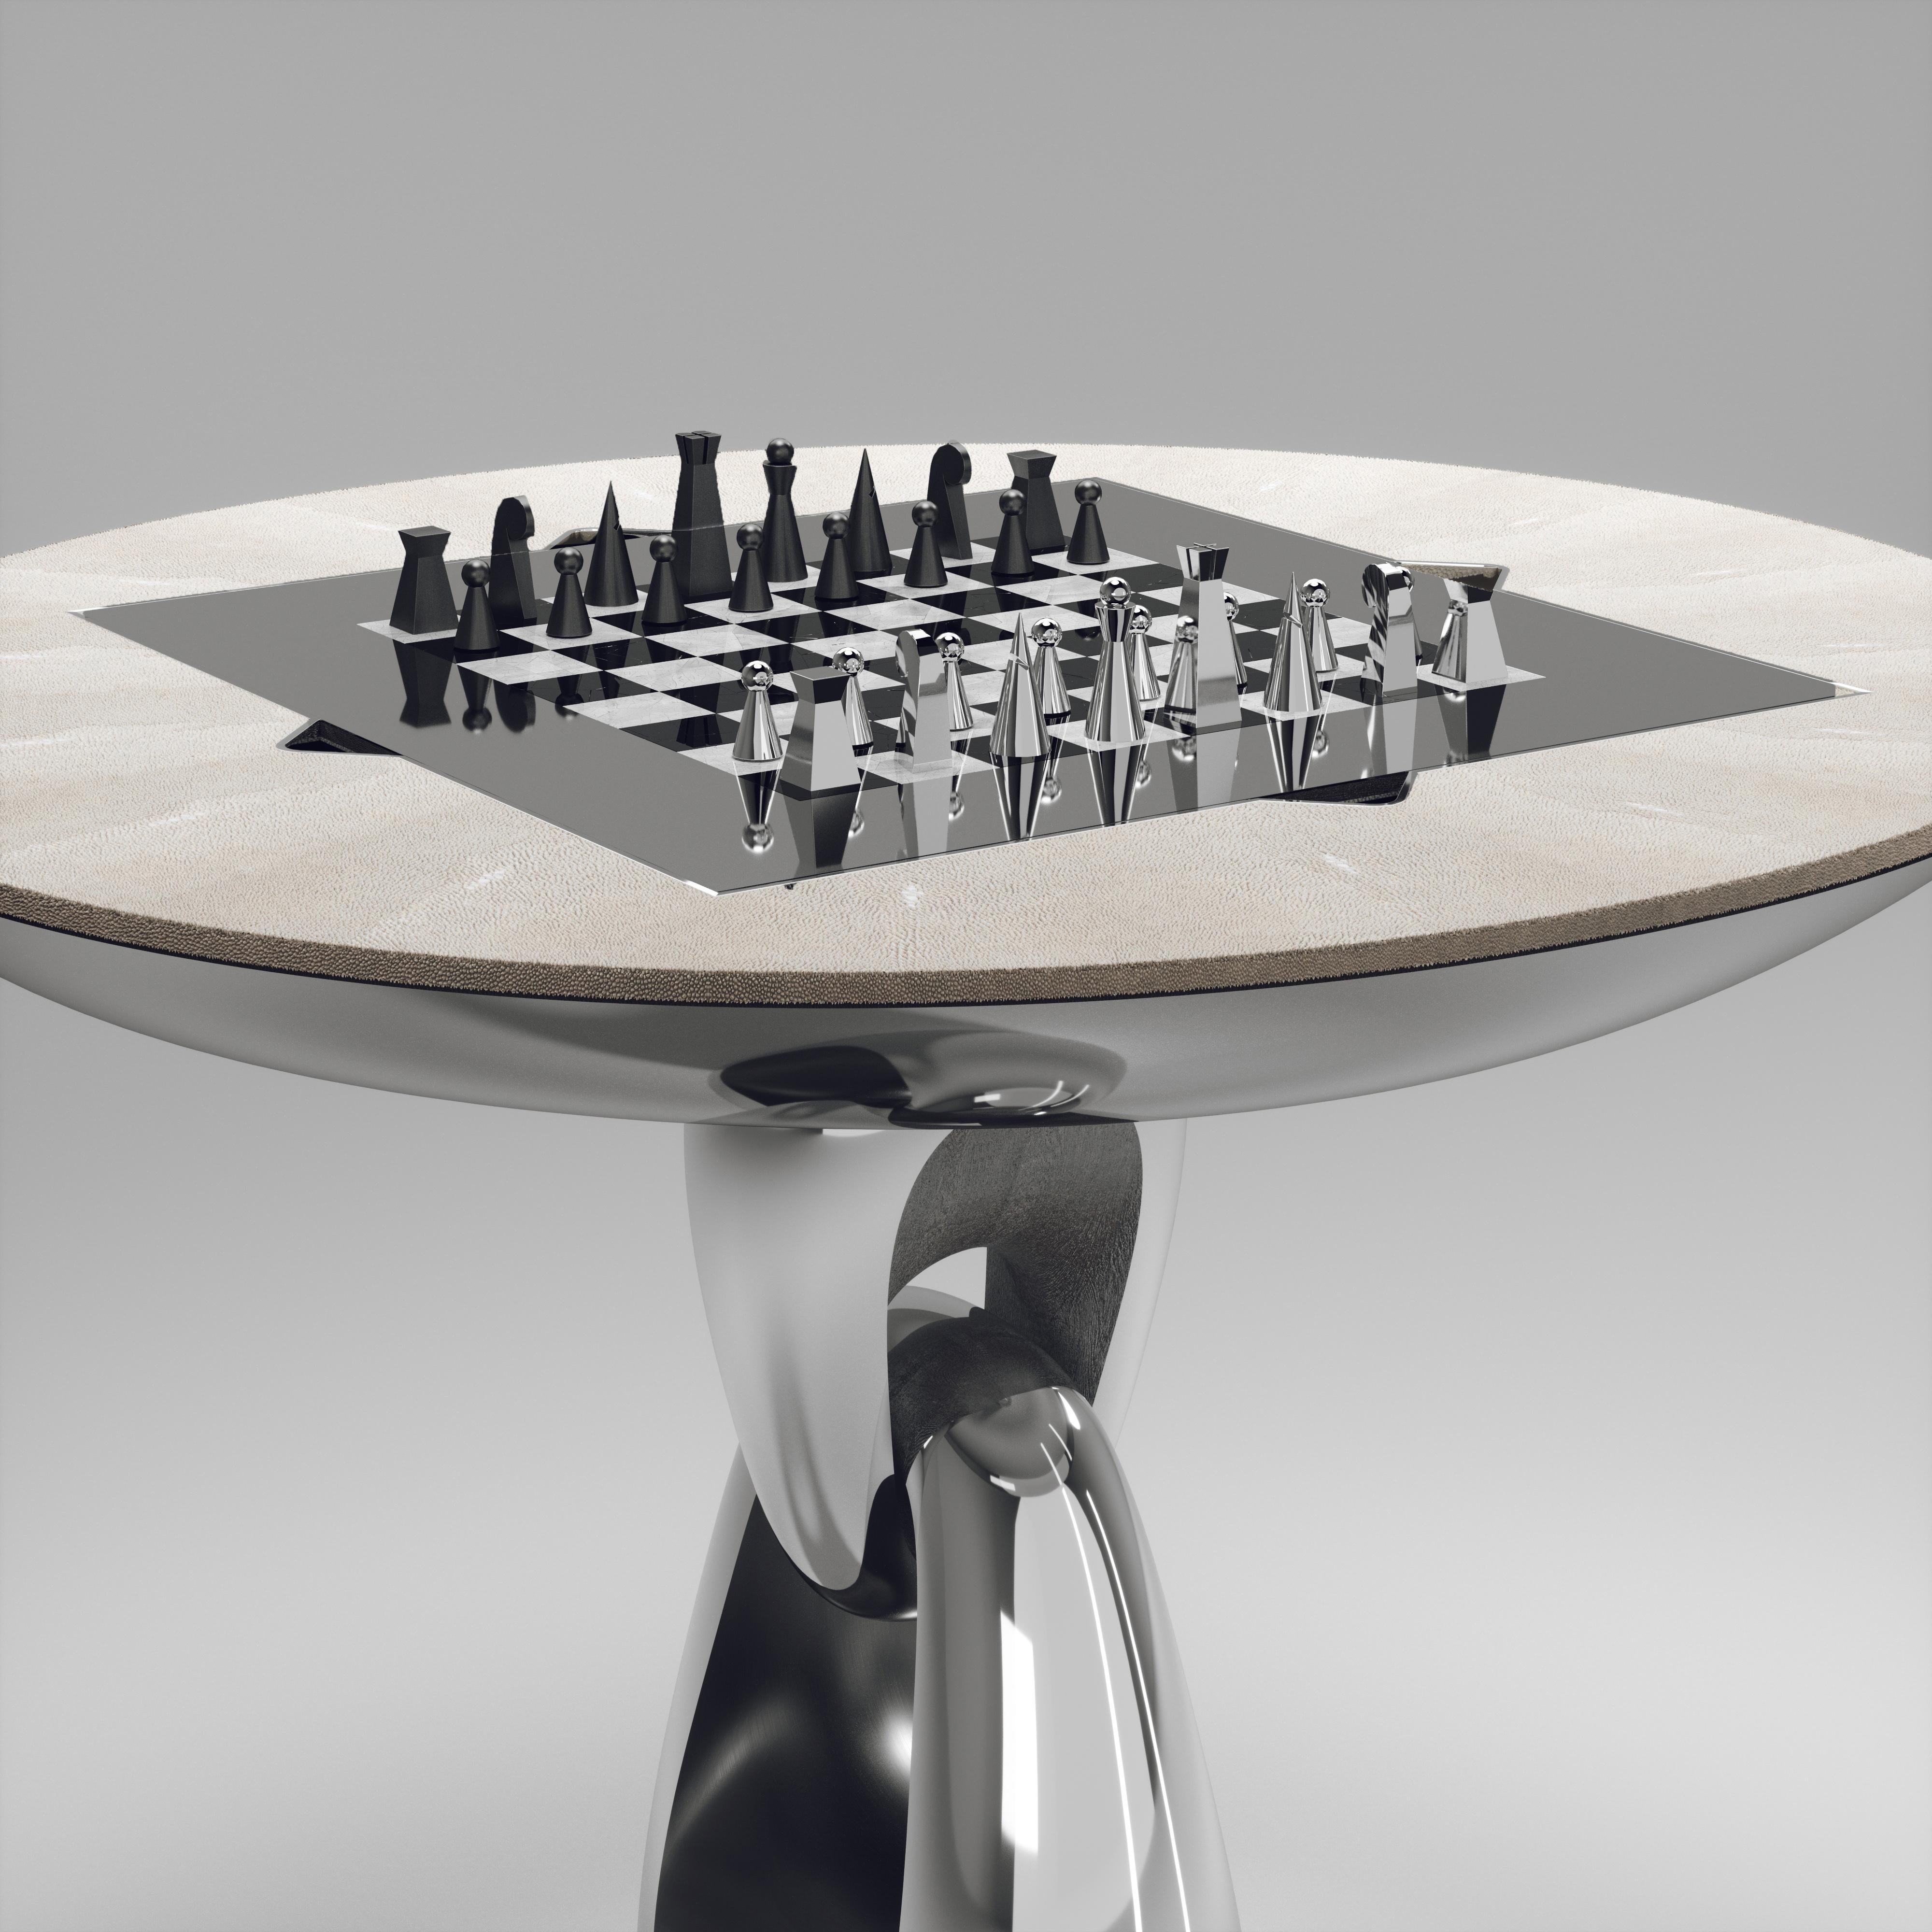 La table de jeu 4 en 1 Saturn de R&Y Augousti est une pièce luxueuse pour votre maison. Les lignes épurées de l'ensemble de la pièce en galuchat crème, accentuées par la base sculpturale et élégante en acier inoxydable poli à finition chromée, la